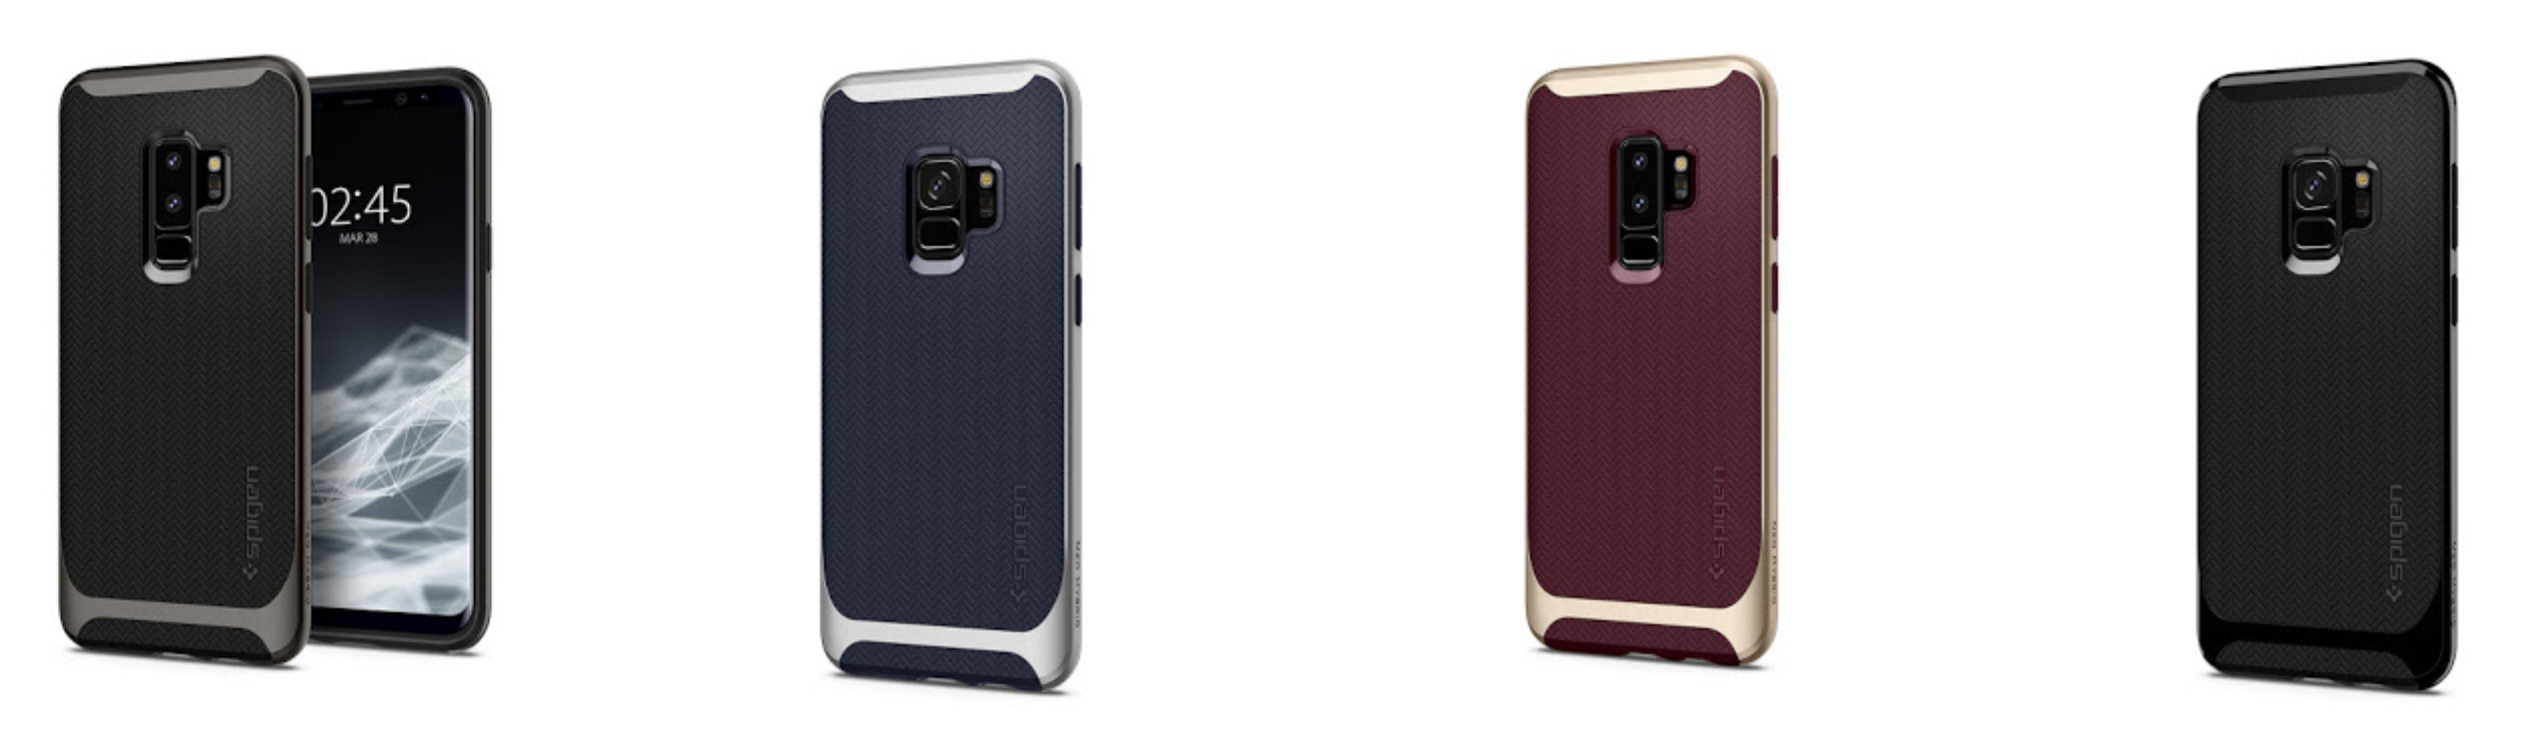 Vegen conjunctie Verenigde Staten van Amerika Spigen launches Samsung Galaxy S9 & S9 Plus cases & accessories available  now